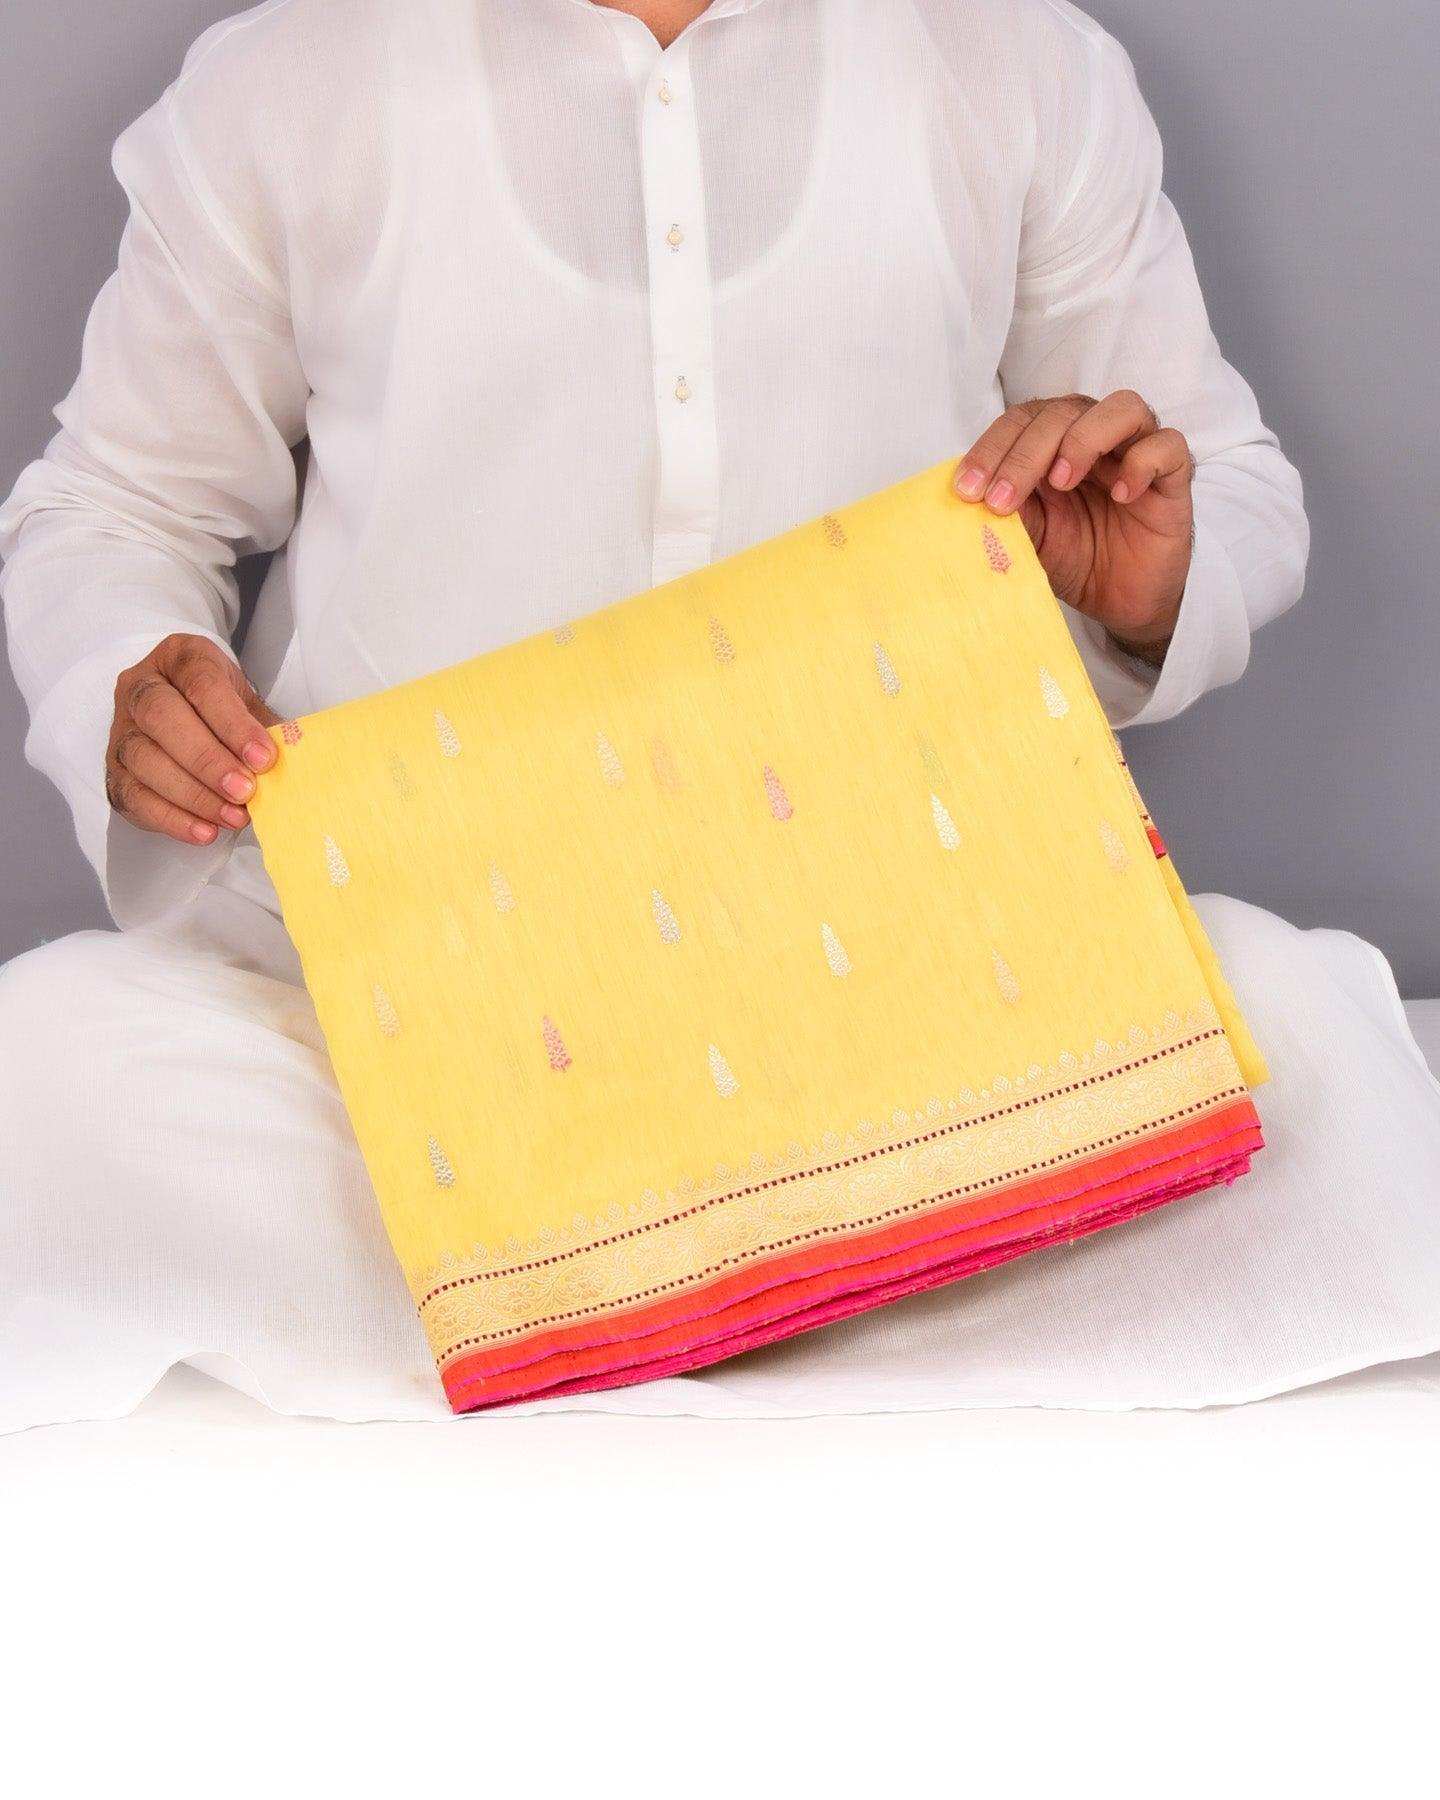 Yellow Banarasi Colored Zari Buti Kadhuan Brocade Handwoven Linen Silk Saree - By HolyWeaves, Benares